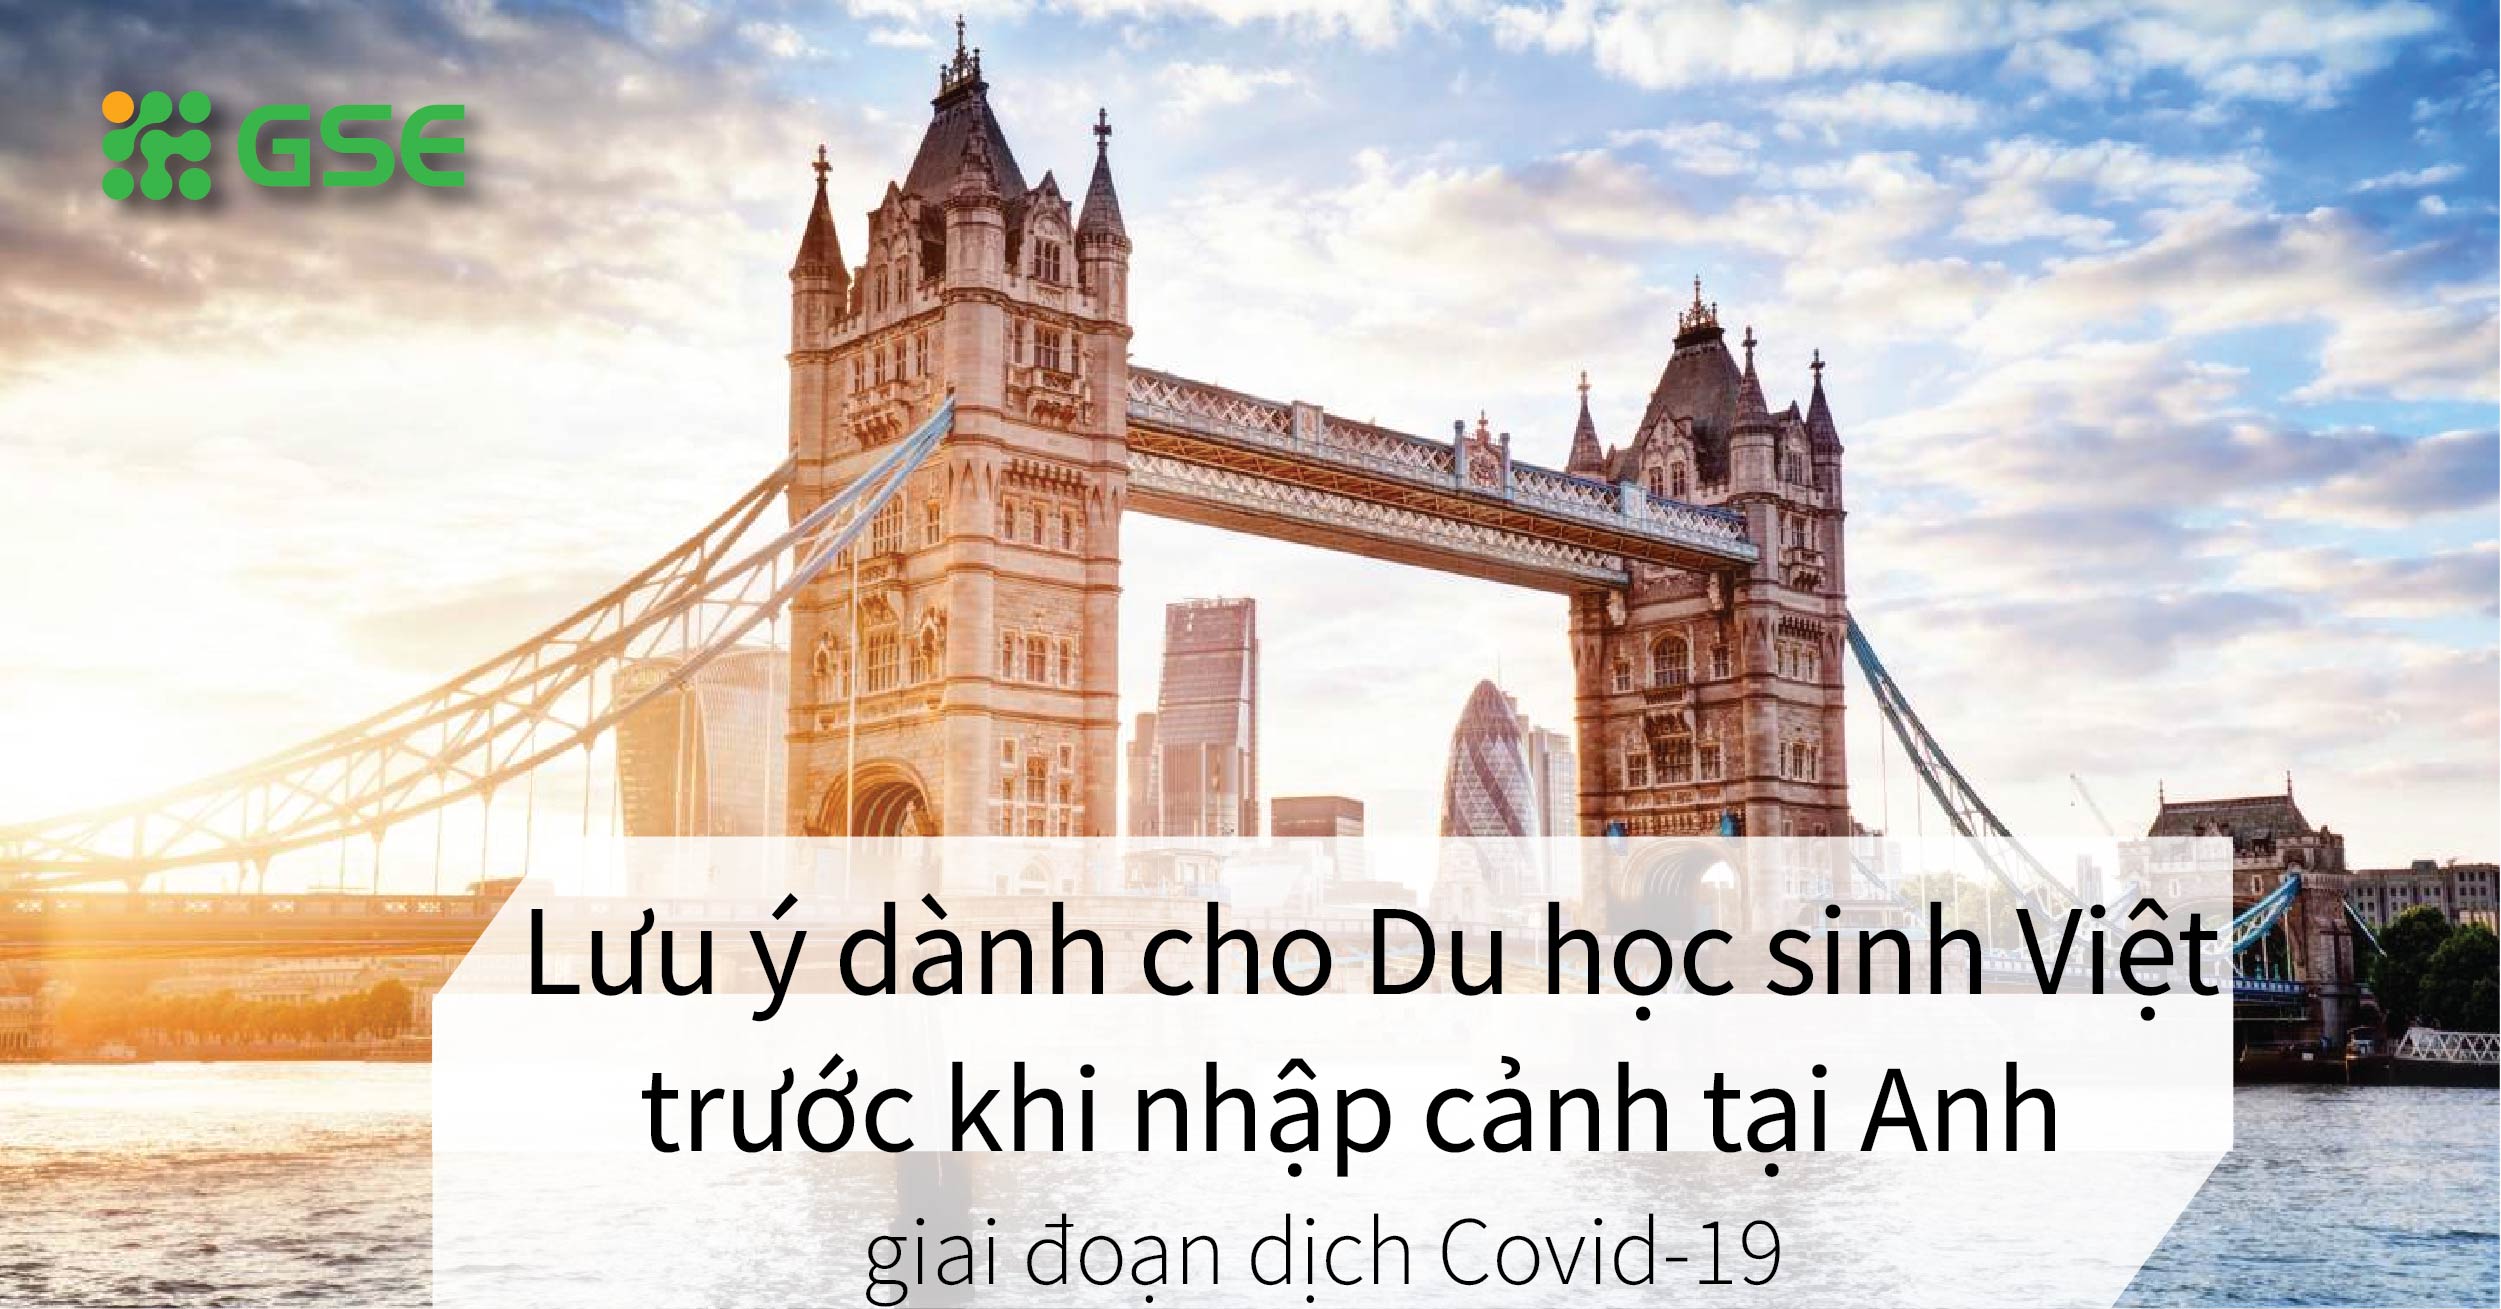 Du học sinh Việt cần lưu ý điều gì trước khi nhập cảnh tại Anh?